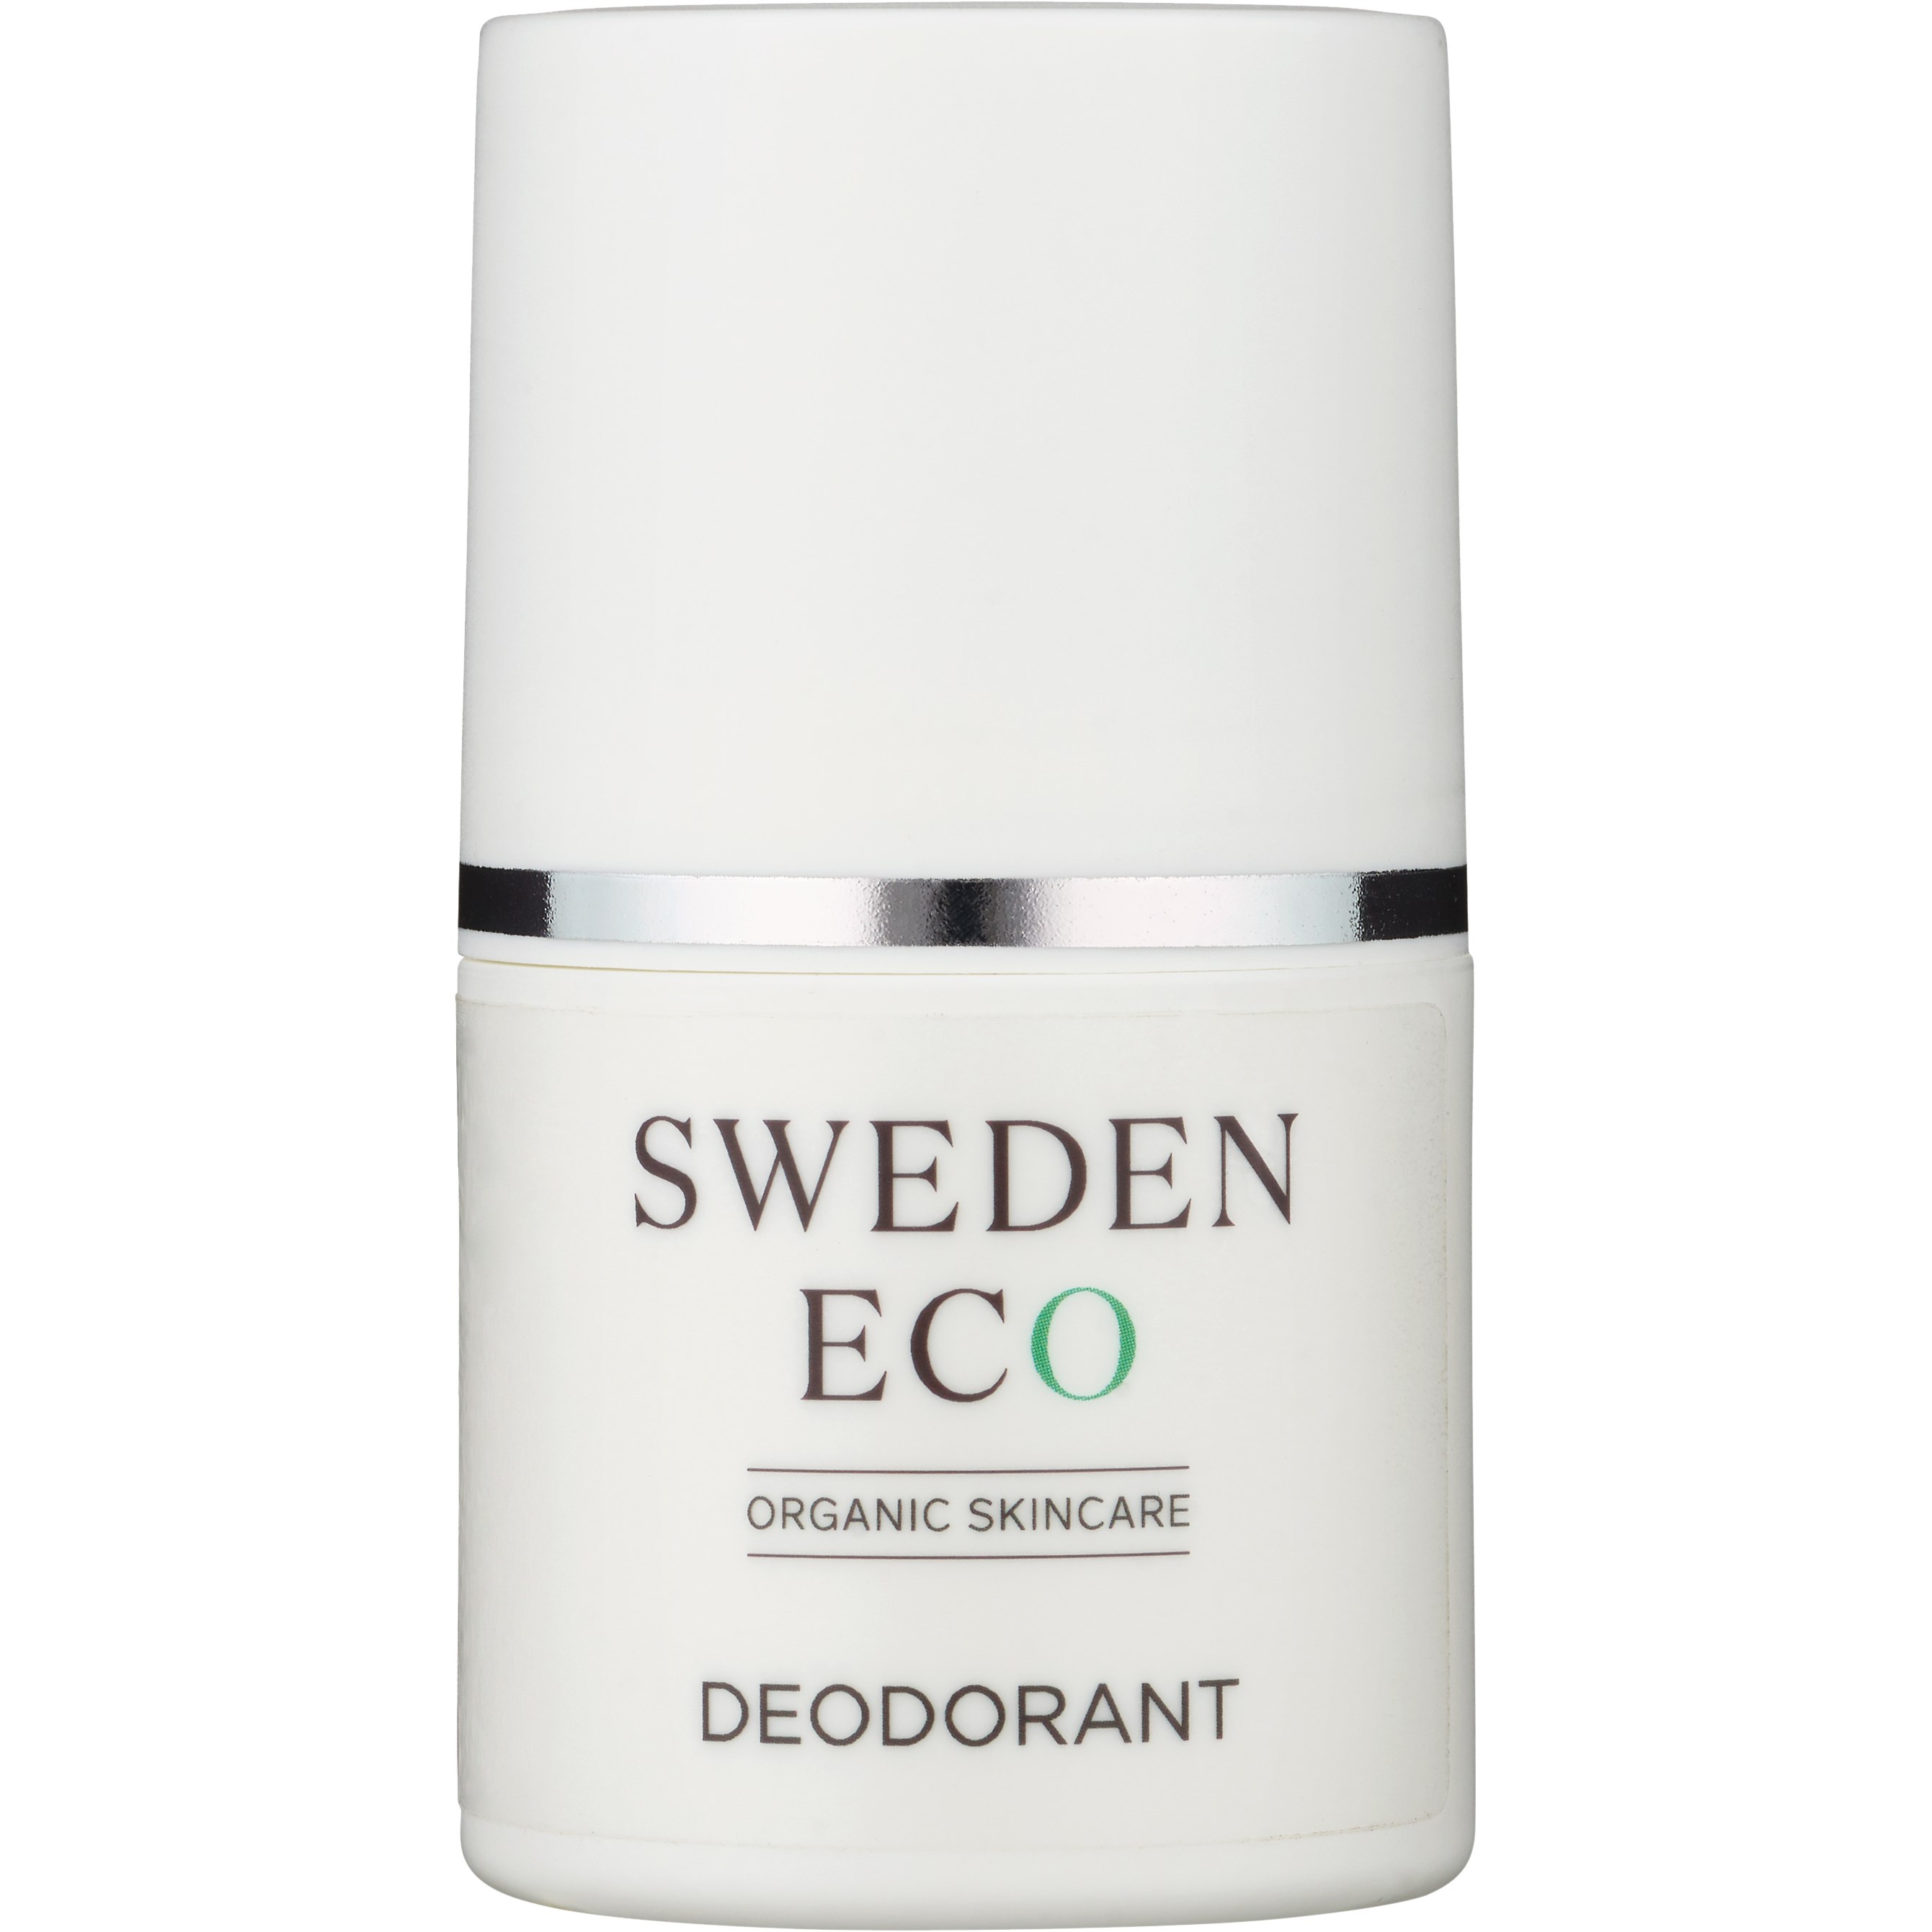 Läs mer om Sweden Eco Skincare for Men Deodorant 50 ml